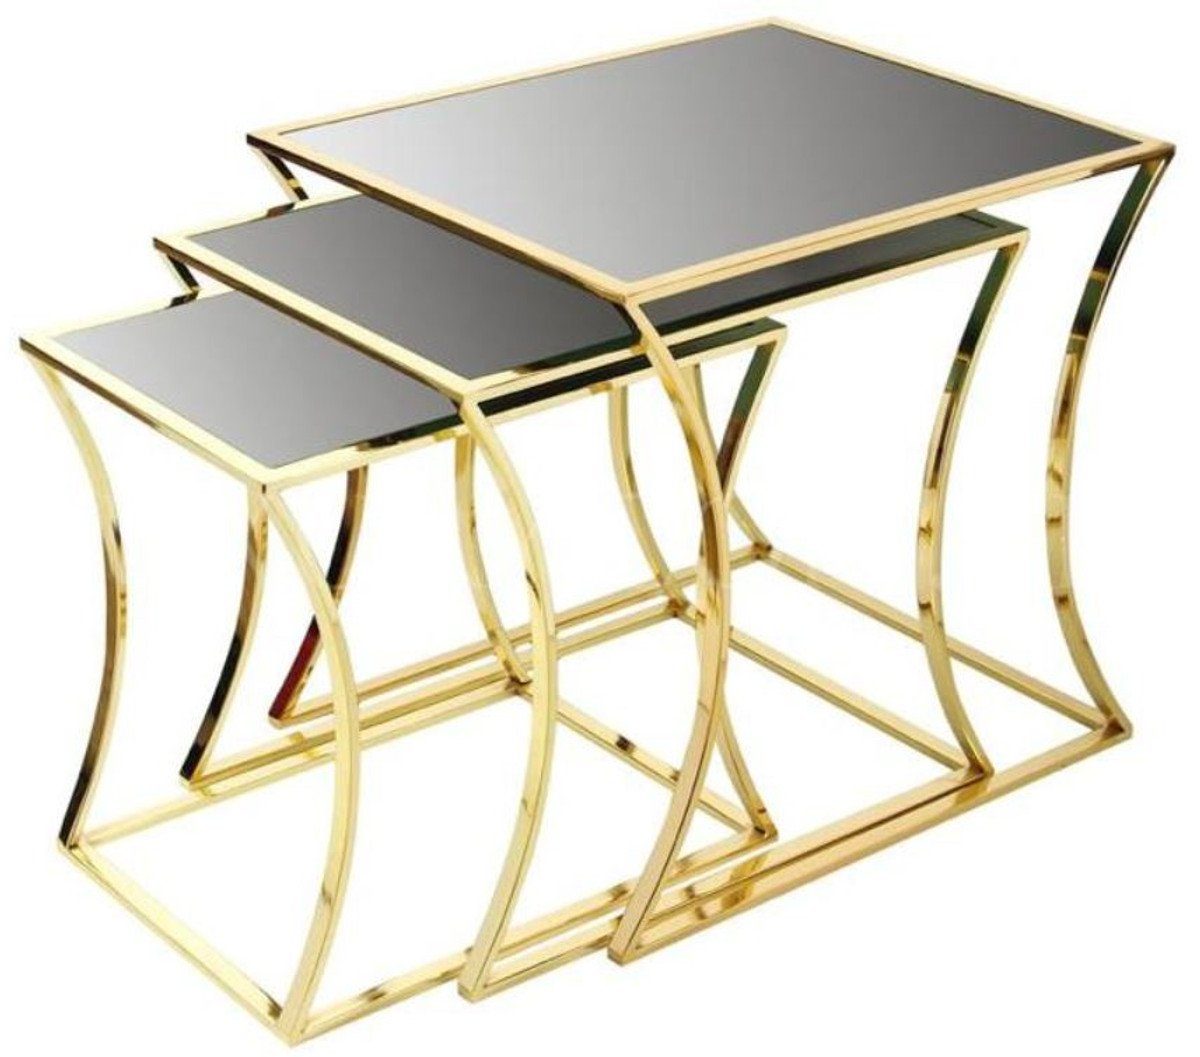 Casa Padrino Beistelltisch Luxus Beistelltisch Set Gold / Schwarz - 3 Metall Tische mit Glasplatte - Luxus Möbel